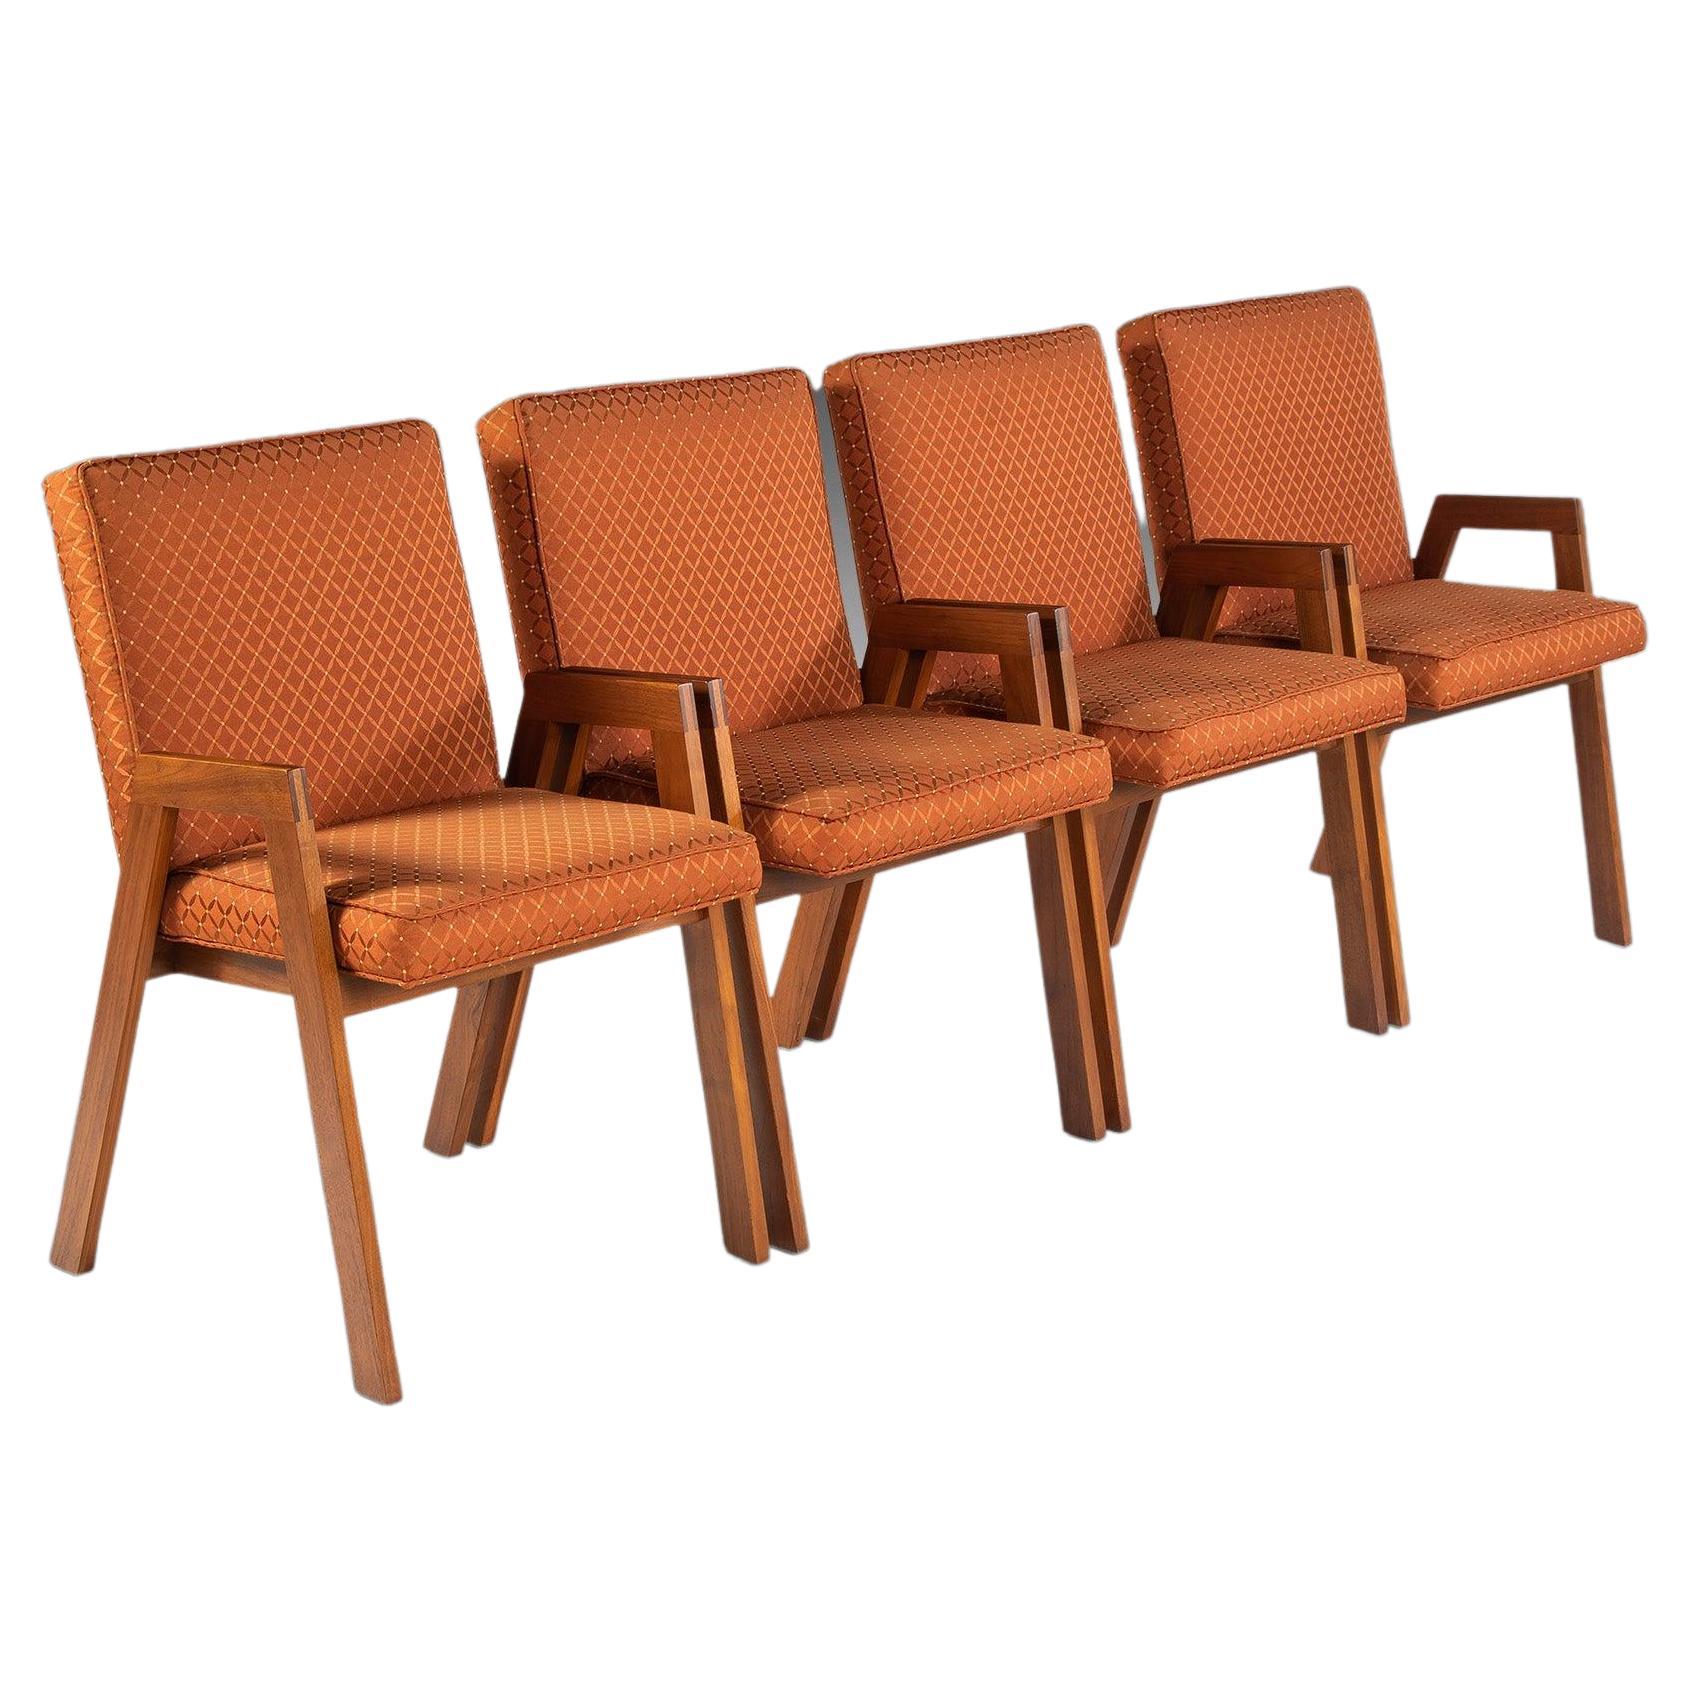 Ensemble de quatre chaises à manger « 4 » de style boussole d'après Jens Risom, vers les années 1960